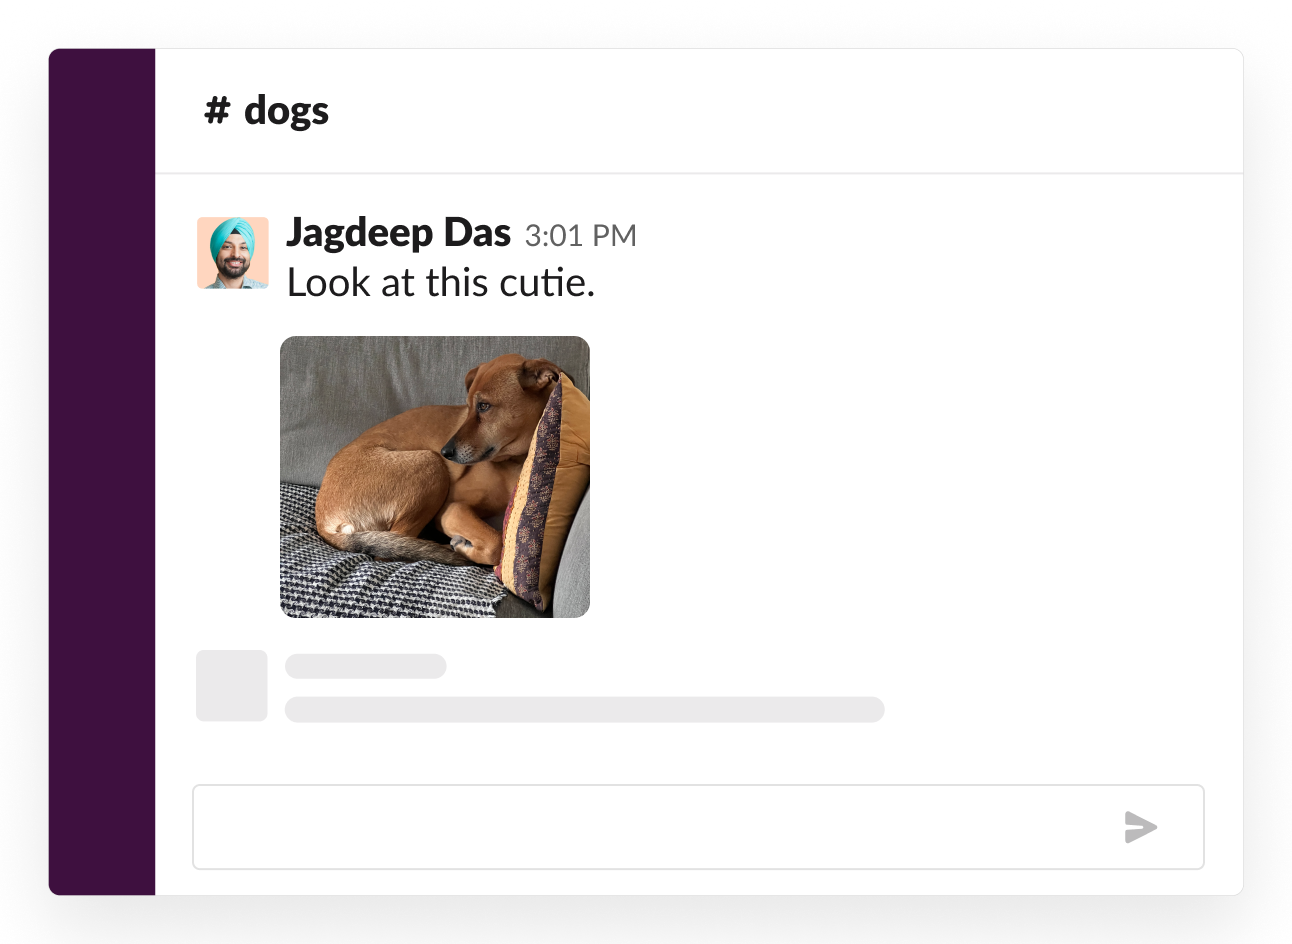 Esempio di un canale social sui cani dove qualcuno ha condiviso una foto carina del suo cucciolo